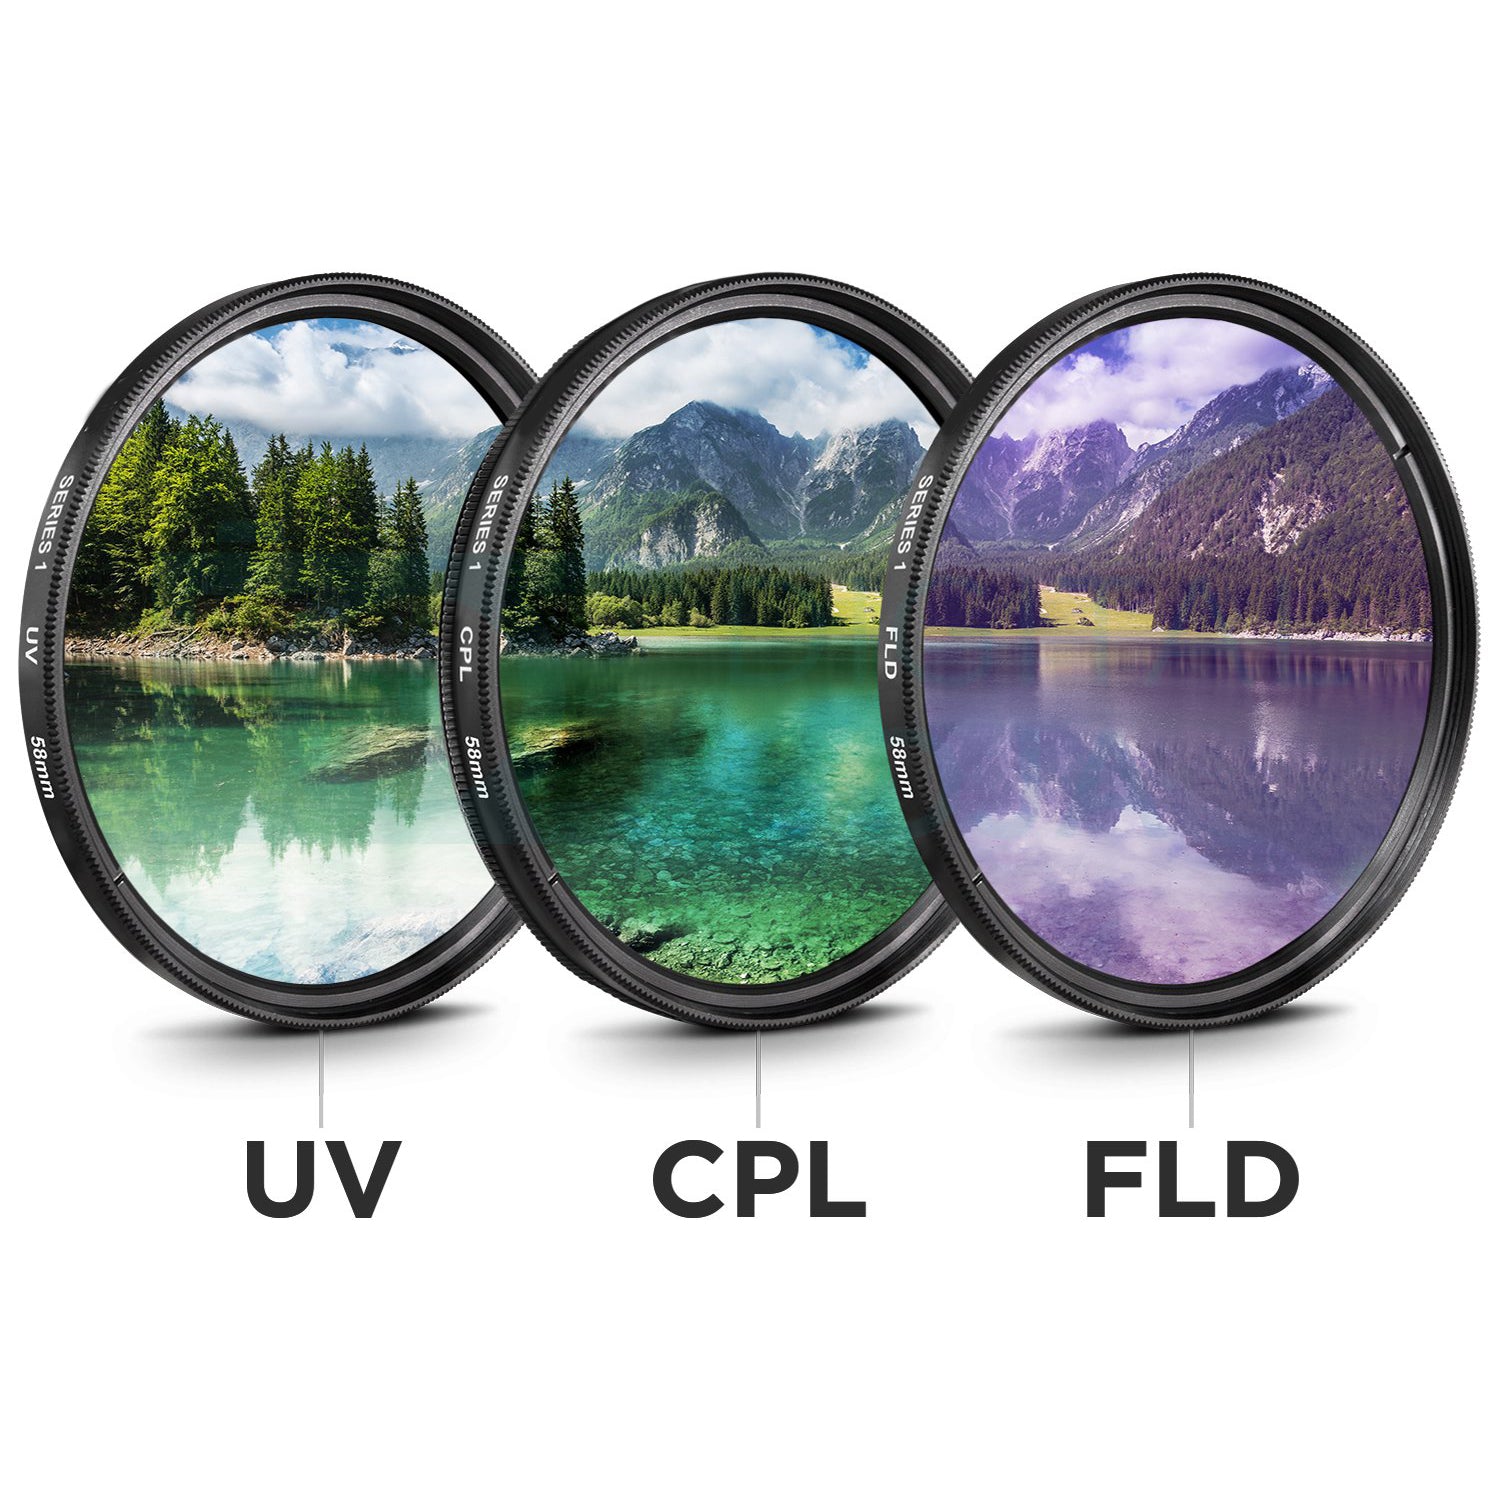 Canon EF 35mm f/1.4L II USM Lens (9523B002) Bundle Includes: DSLR Sling Backpack, 9PC Filter Kit, Sandisk 32GB SD + More